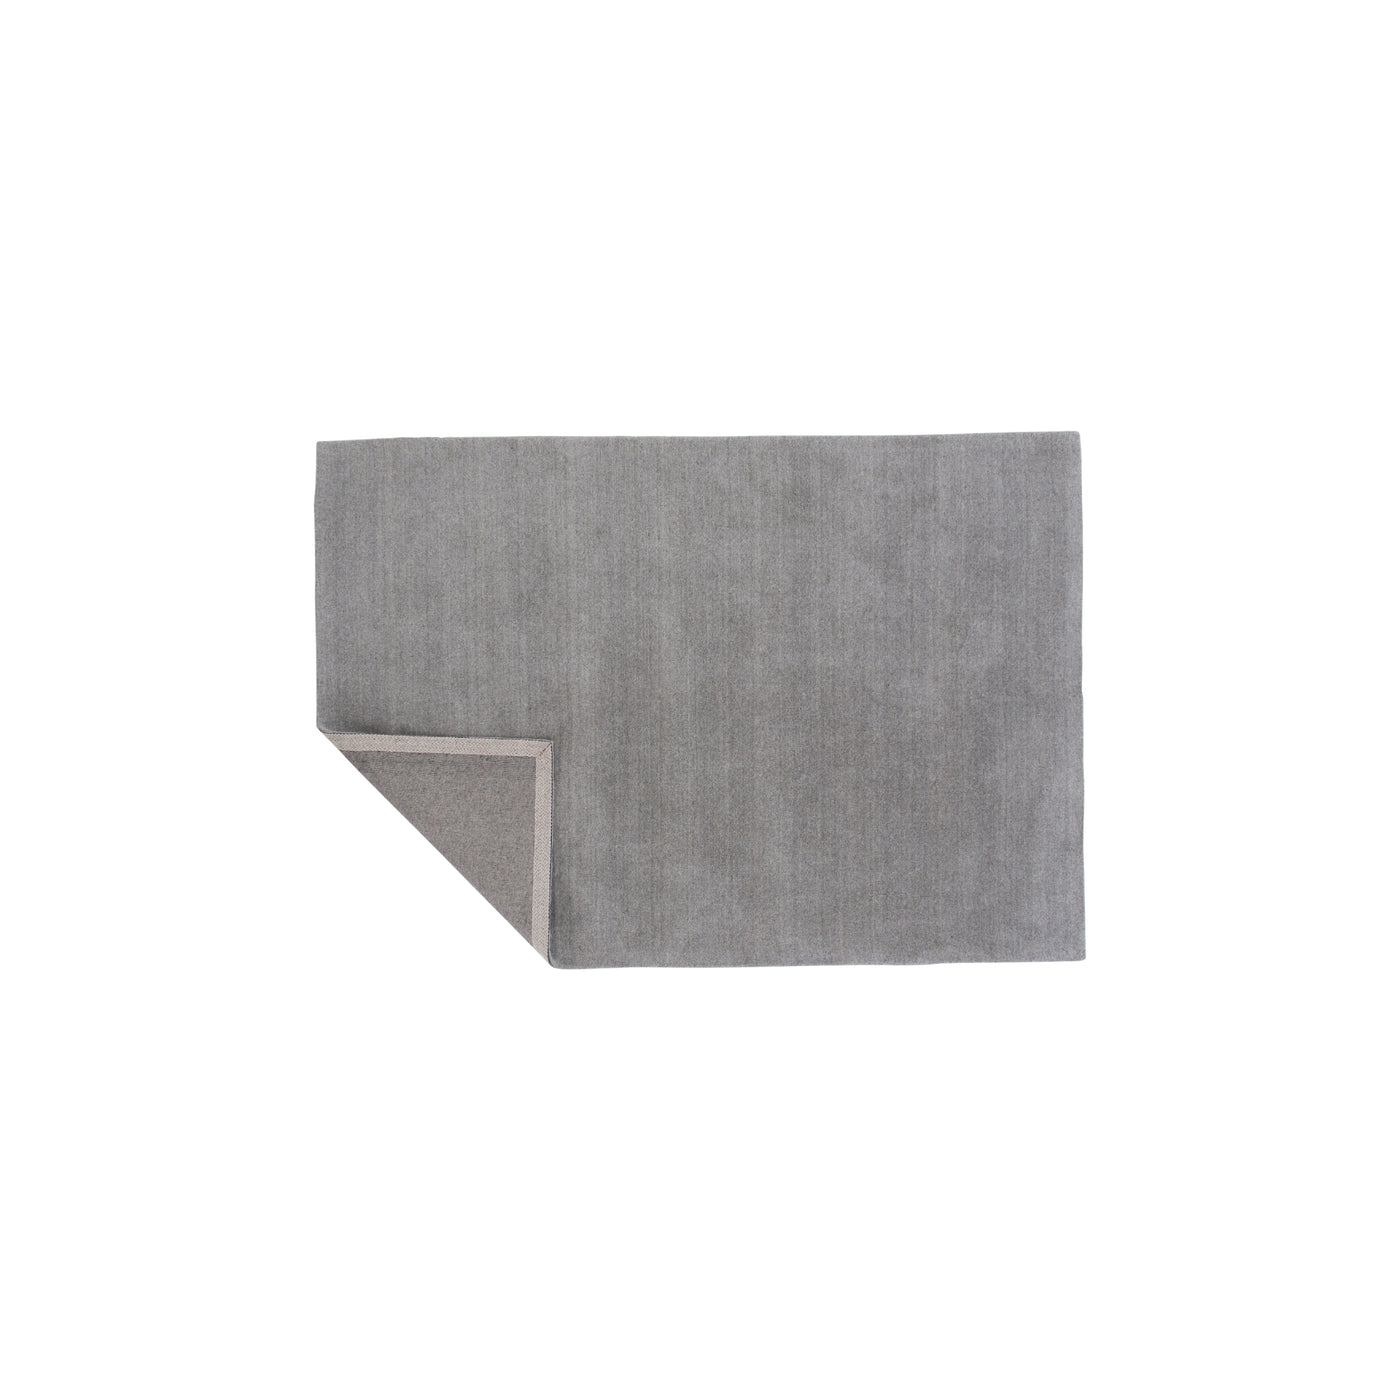 Uluaki - Teppich aus Wolle/Polyester - Hellgrau - L200*B300